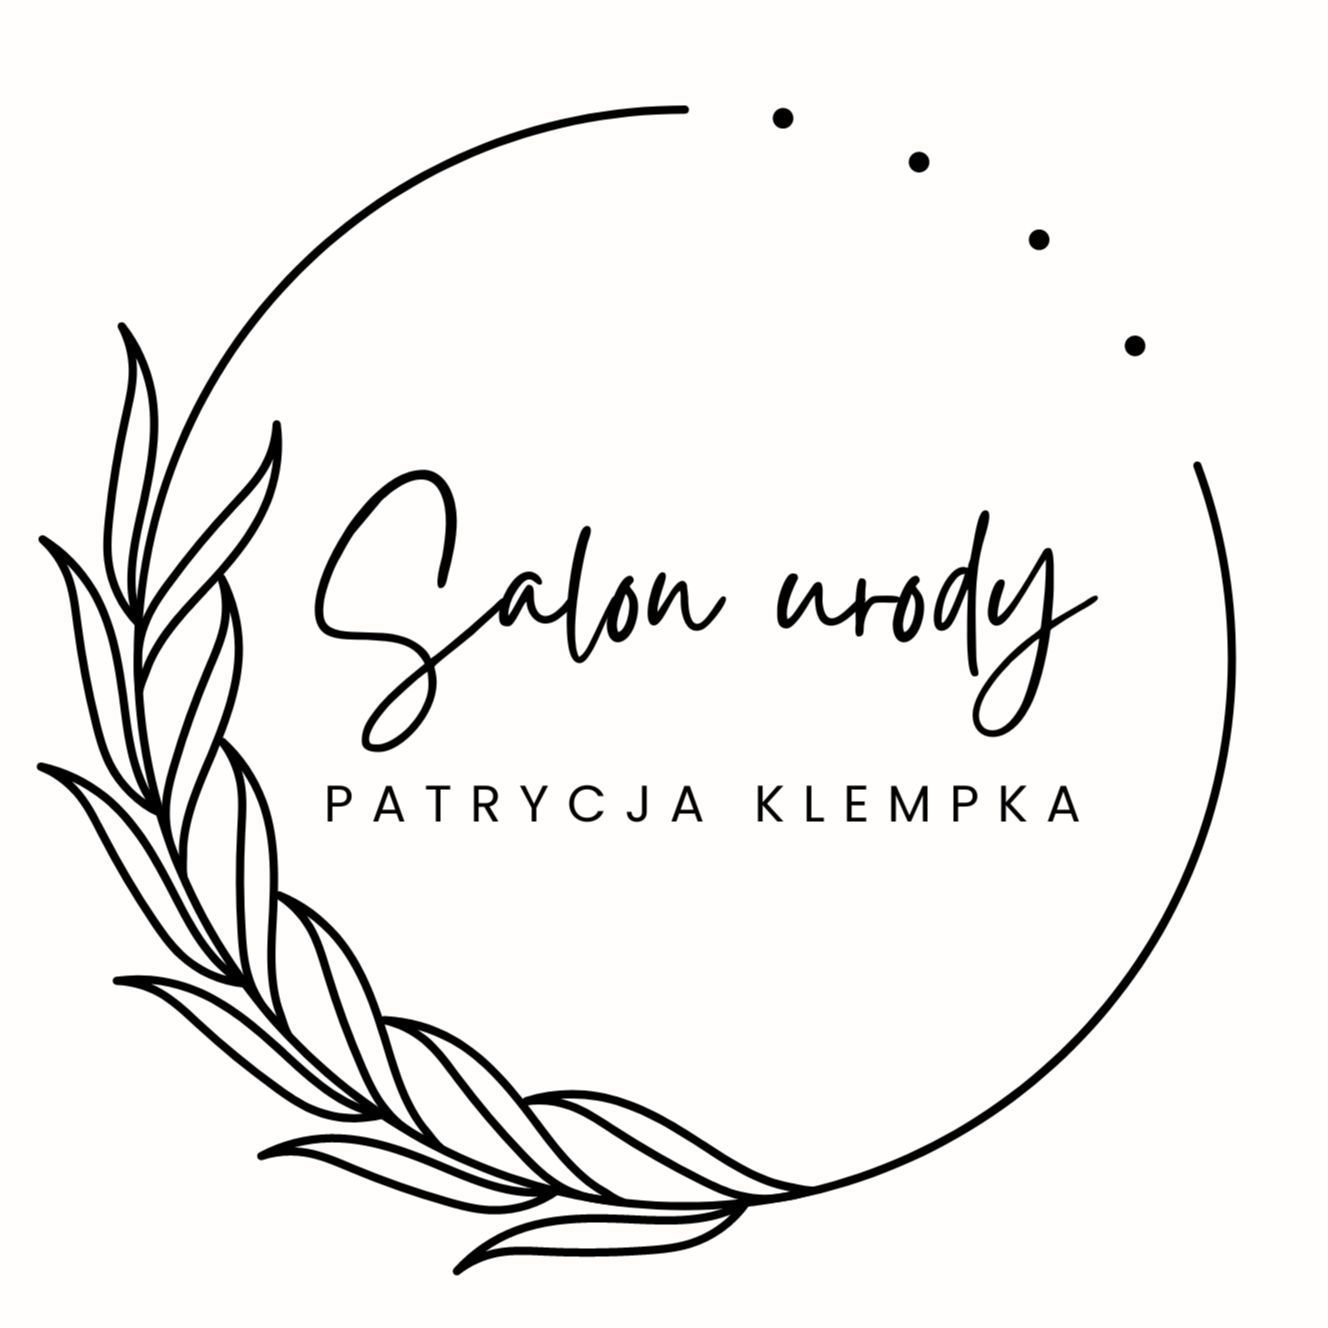 Salon urody Patrycja Klempka, ulica Łukowska 2c, Lokal 21, Koło Weterynarza, 04-113, Warszawa, Praga-Południe